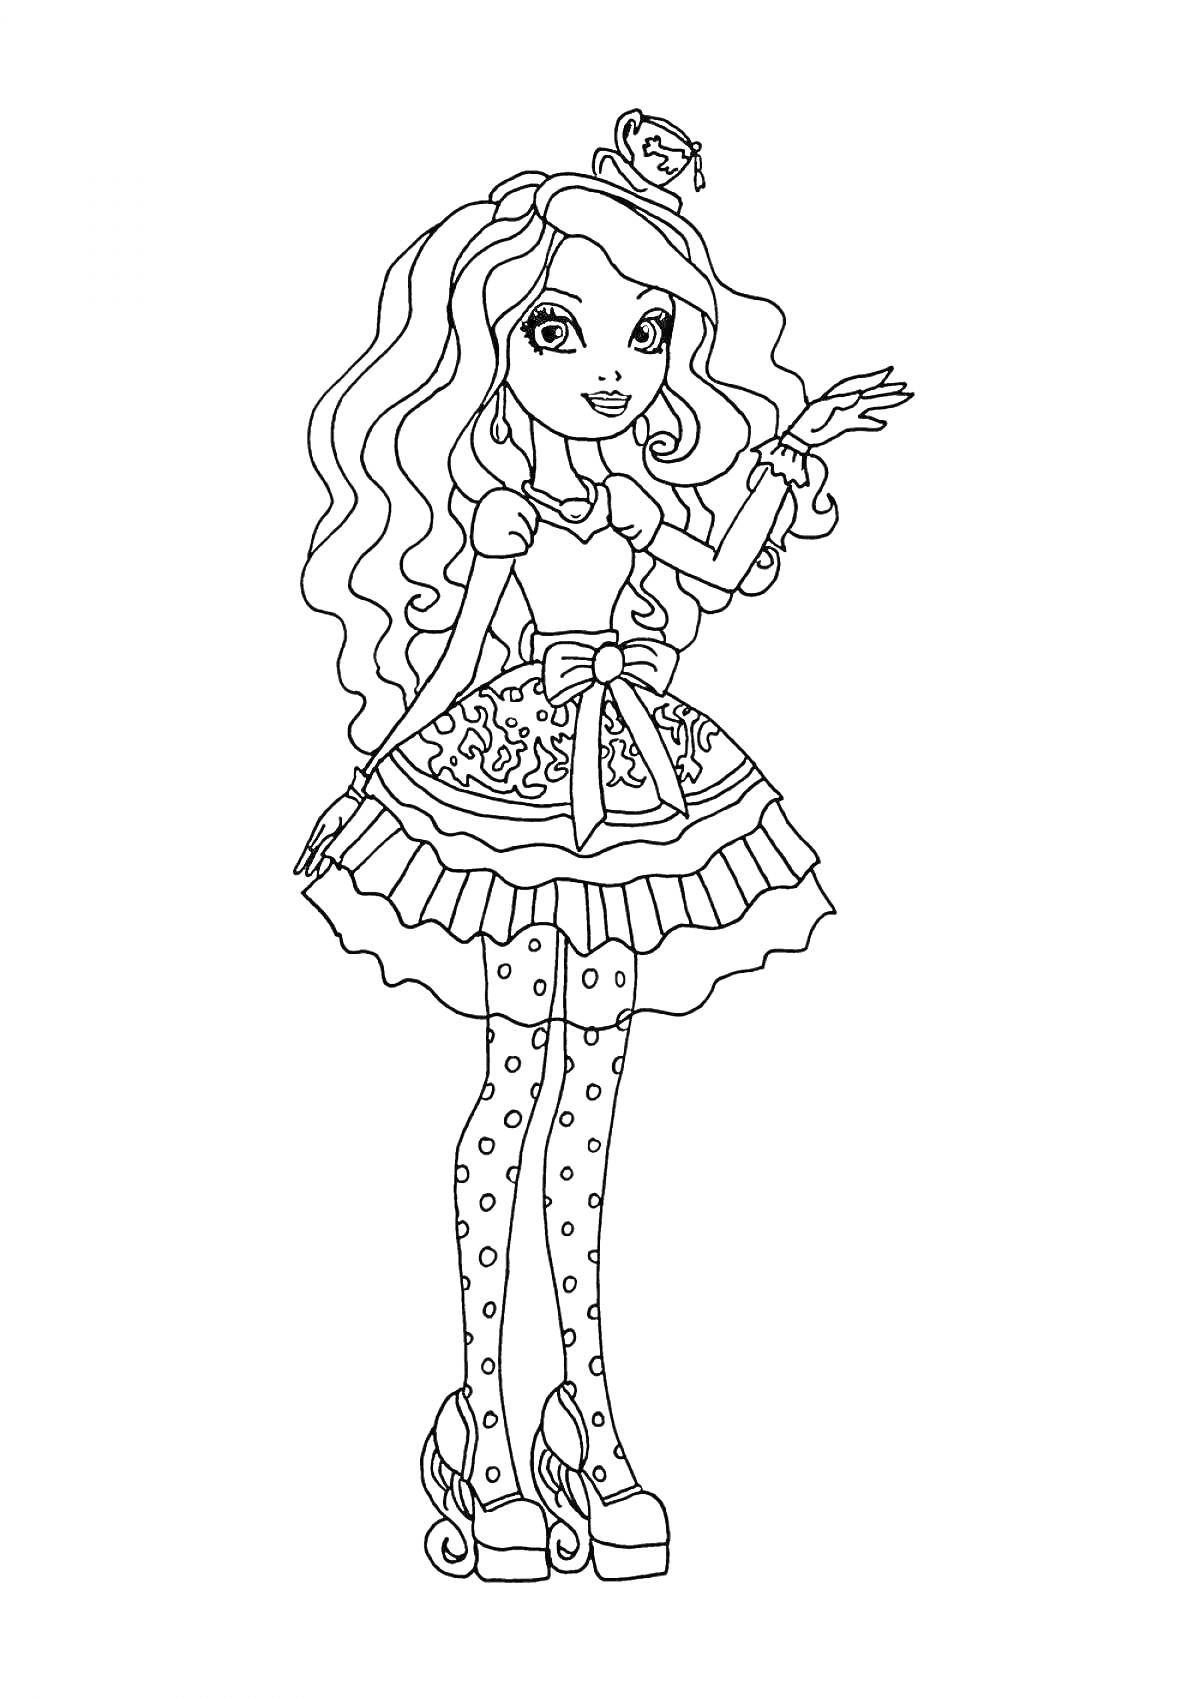 Раскраска Девочка с длинными волнистыми волосами в короне, платье с рюшами и бантом, в чулках с узорами и на высоких каблуках